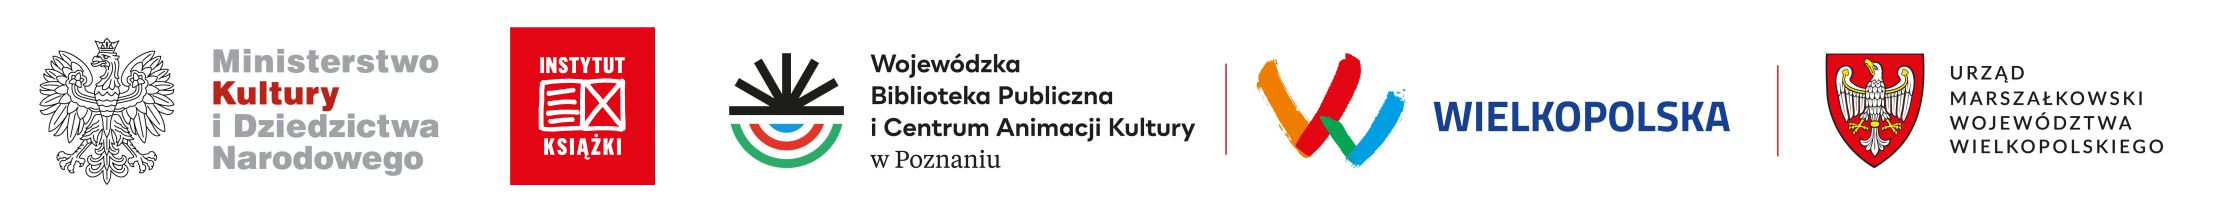 logotypy: Ministerstwa Kultury i Dziedzictwa Narodowego, Instytutu Książki, WBPiCAK, Wielkopolska i Urzędu Marszałkowskiego